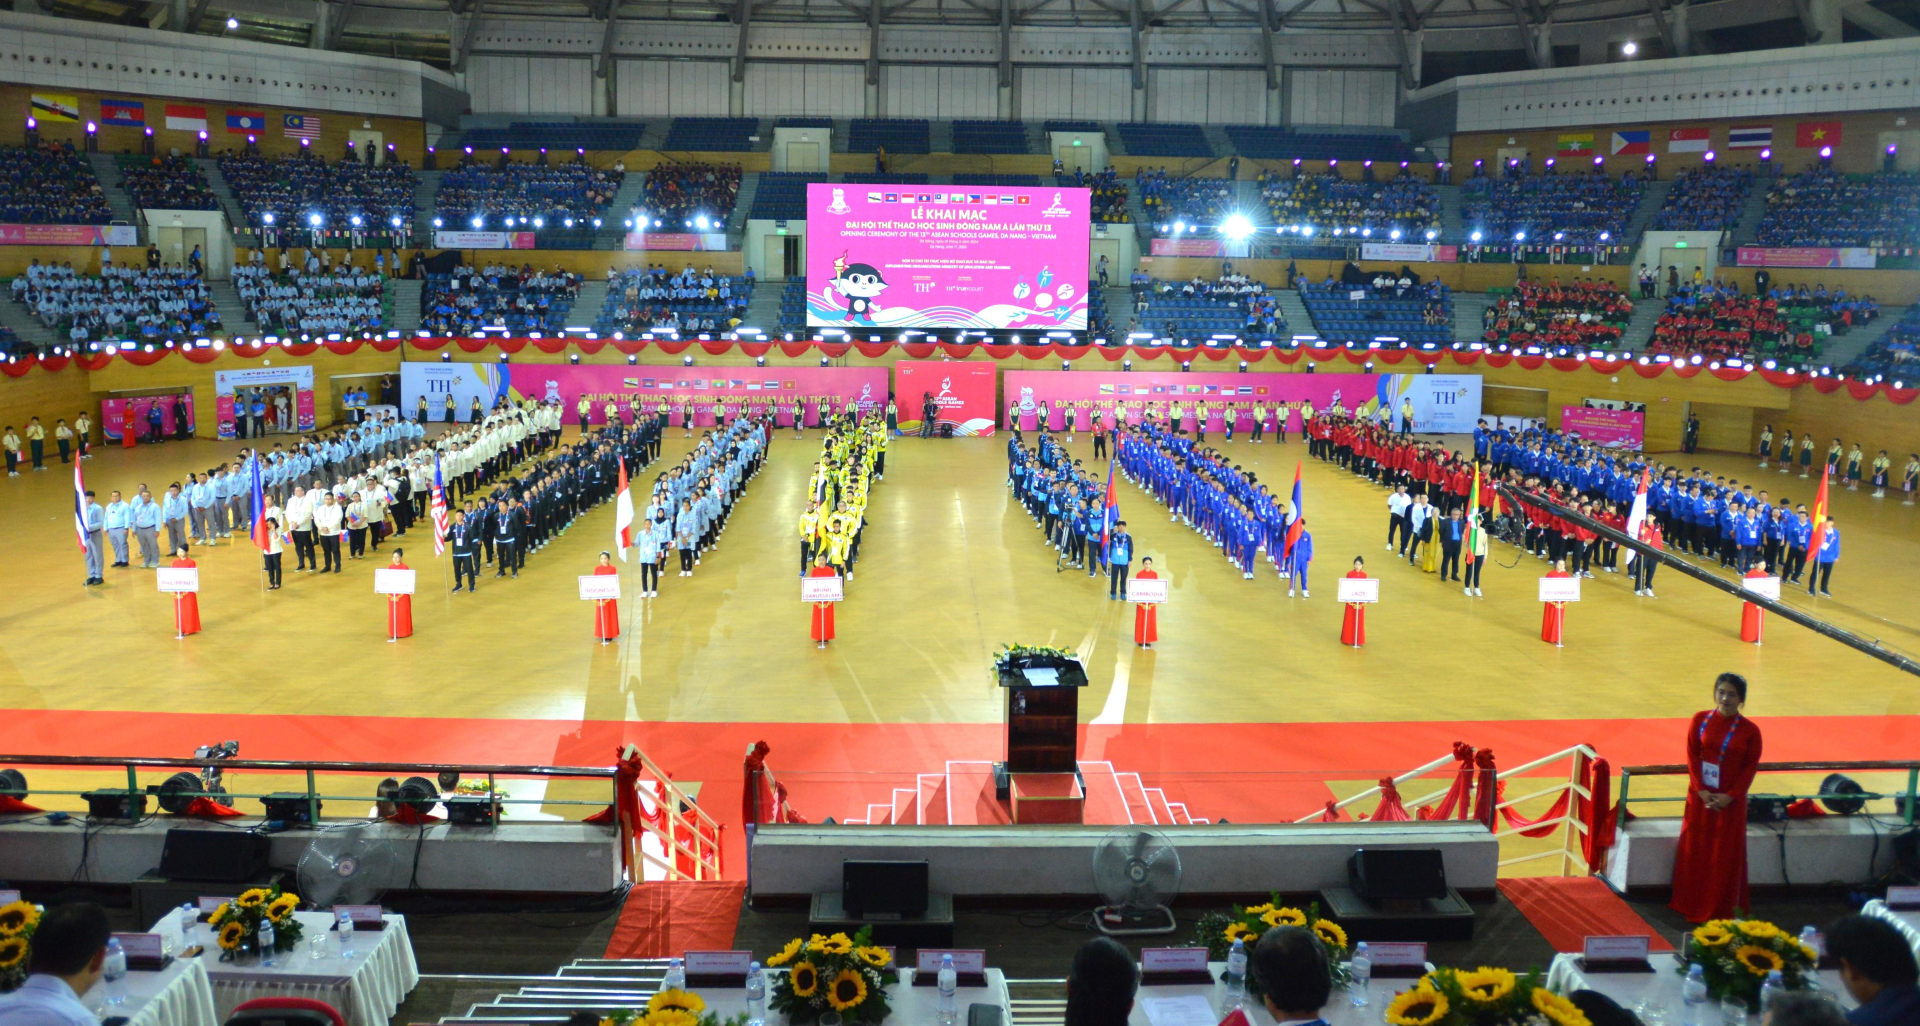 Ngày 1/6, Lễ khai mạc Đại hội Thể thao học sinh Đông Nam Á lần thứ 13 (ASEAN Schools Games - ASG) diễn ra tại thành phố Đà Nẵng.